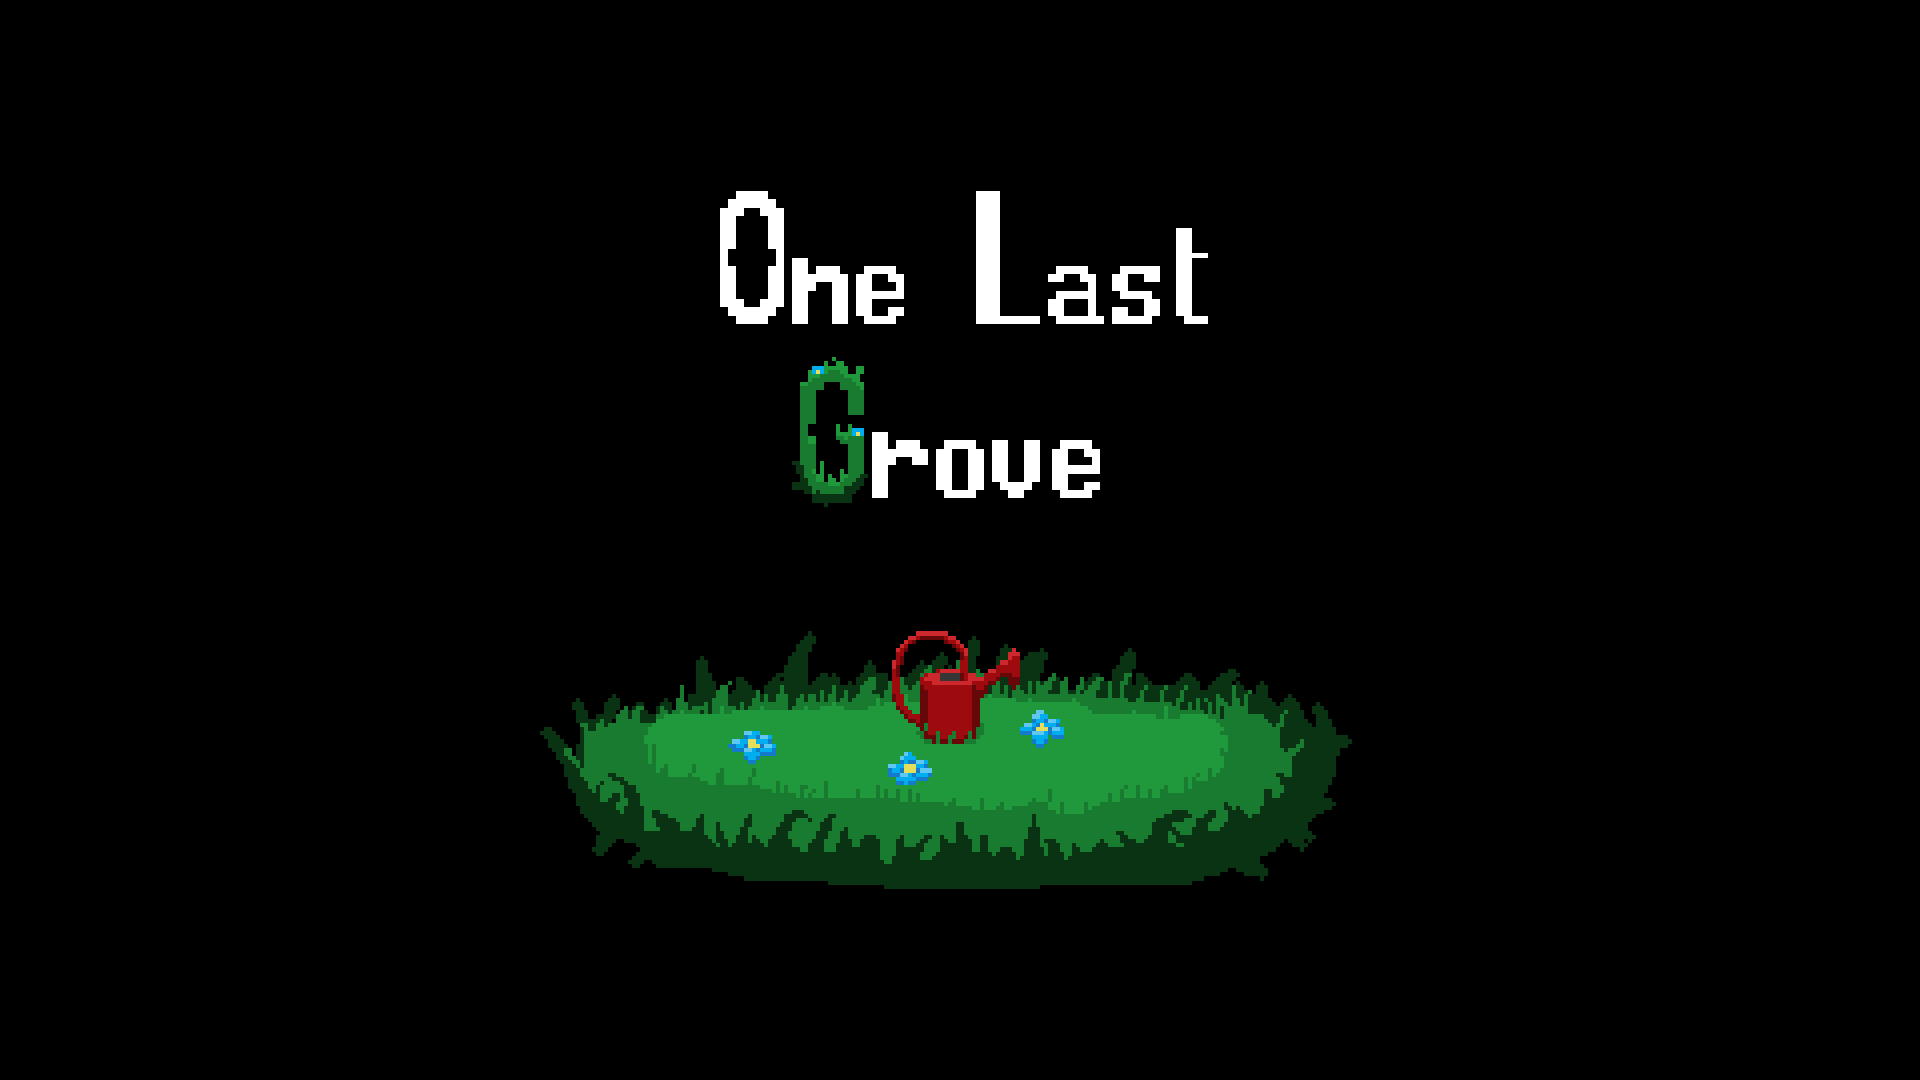 One Last Grove